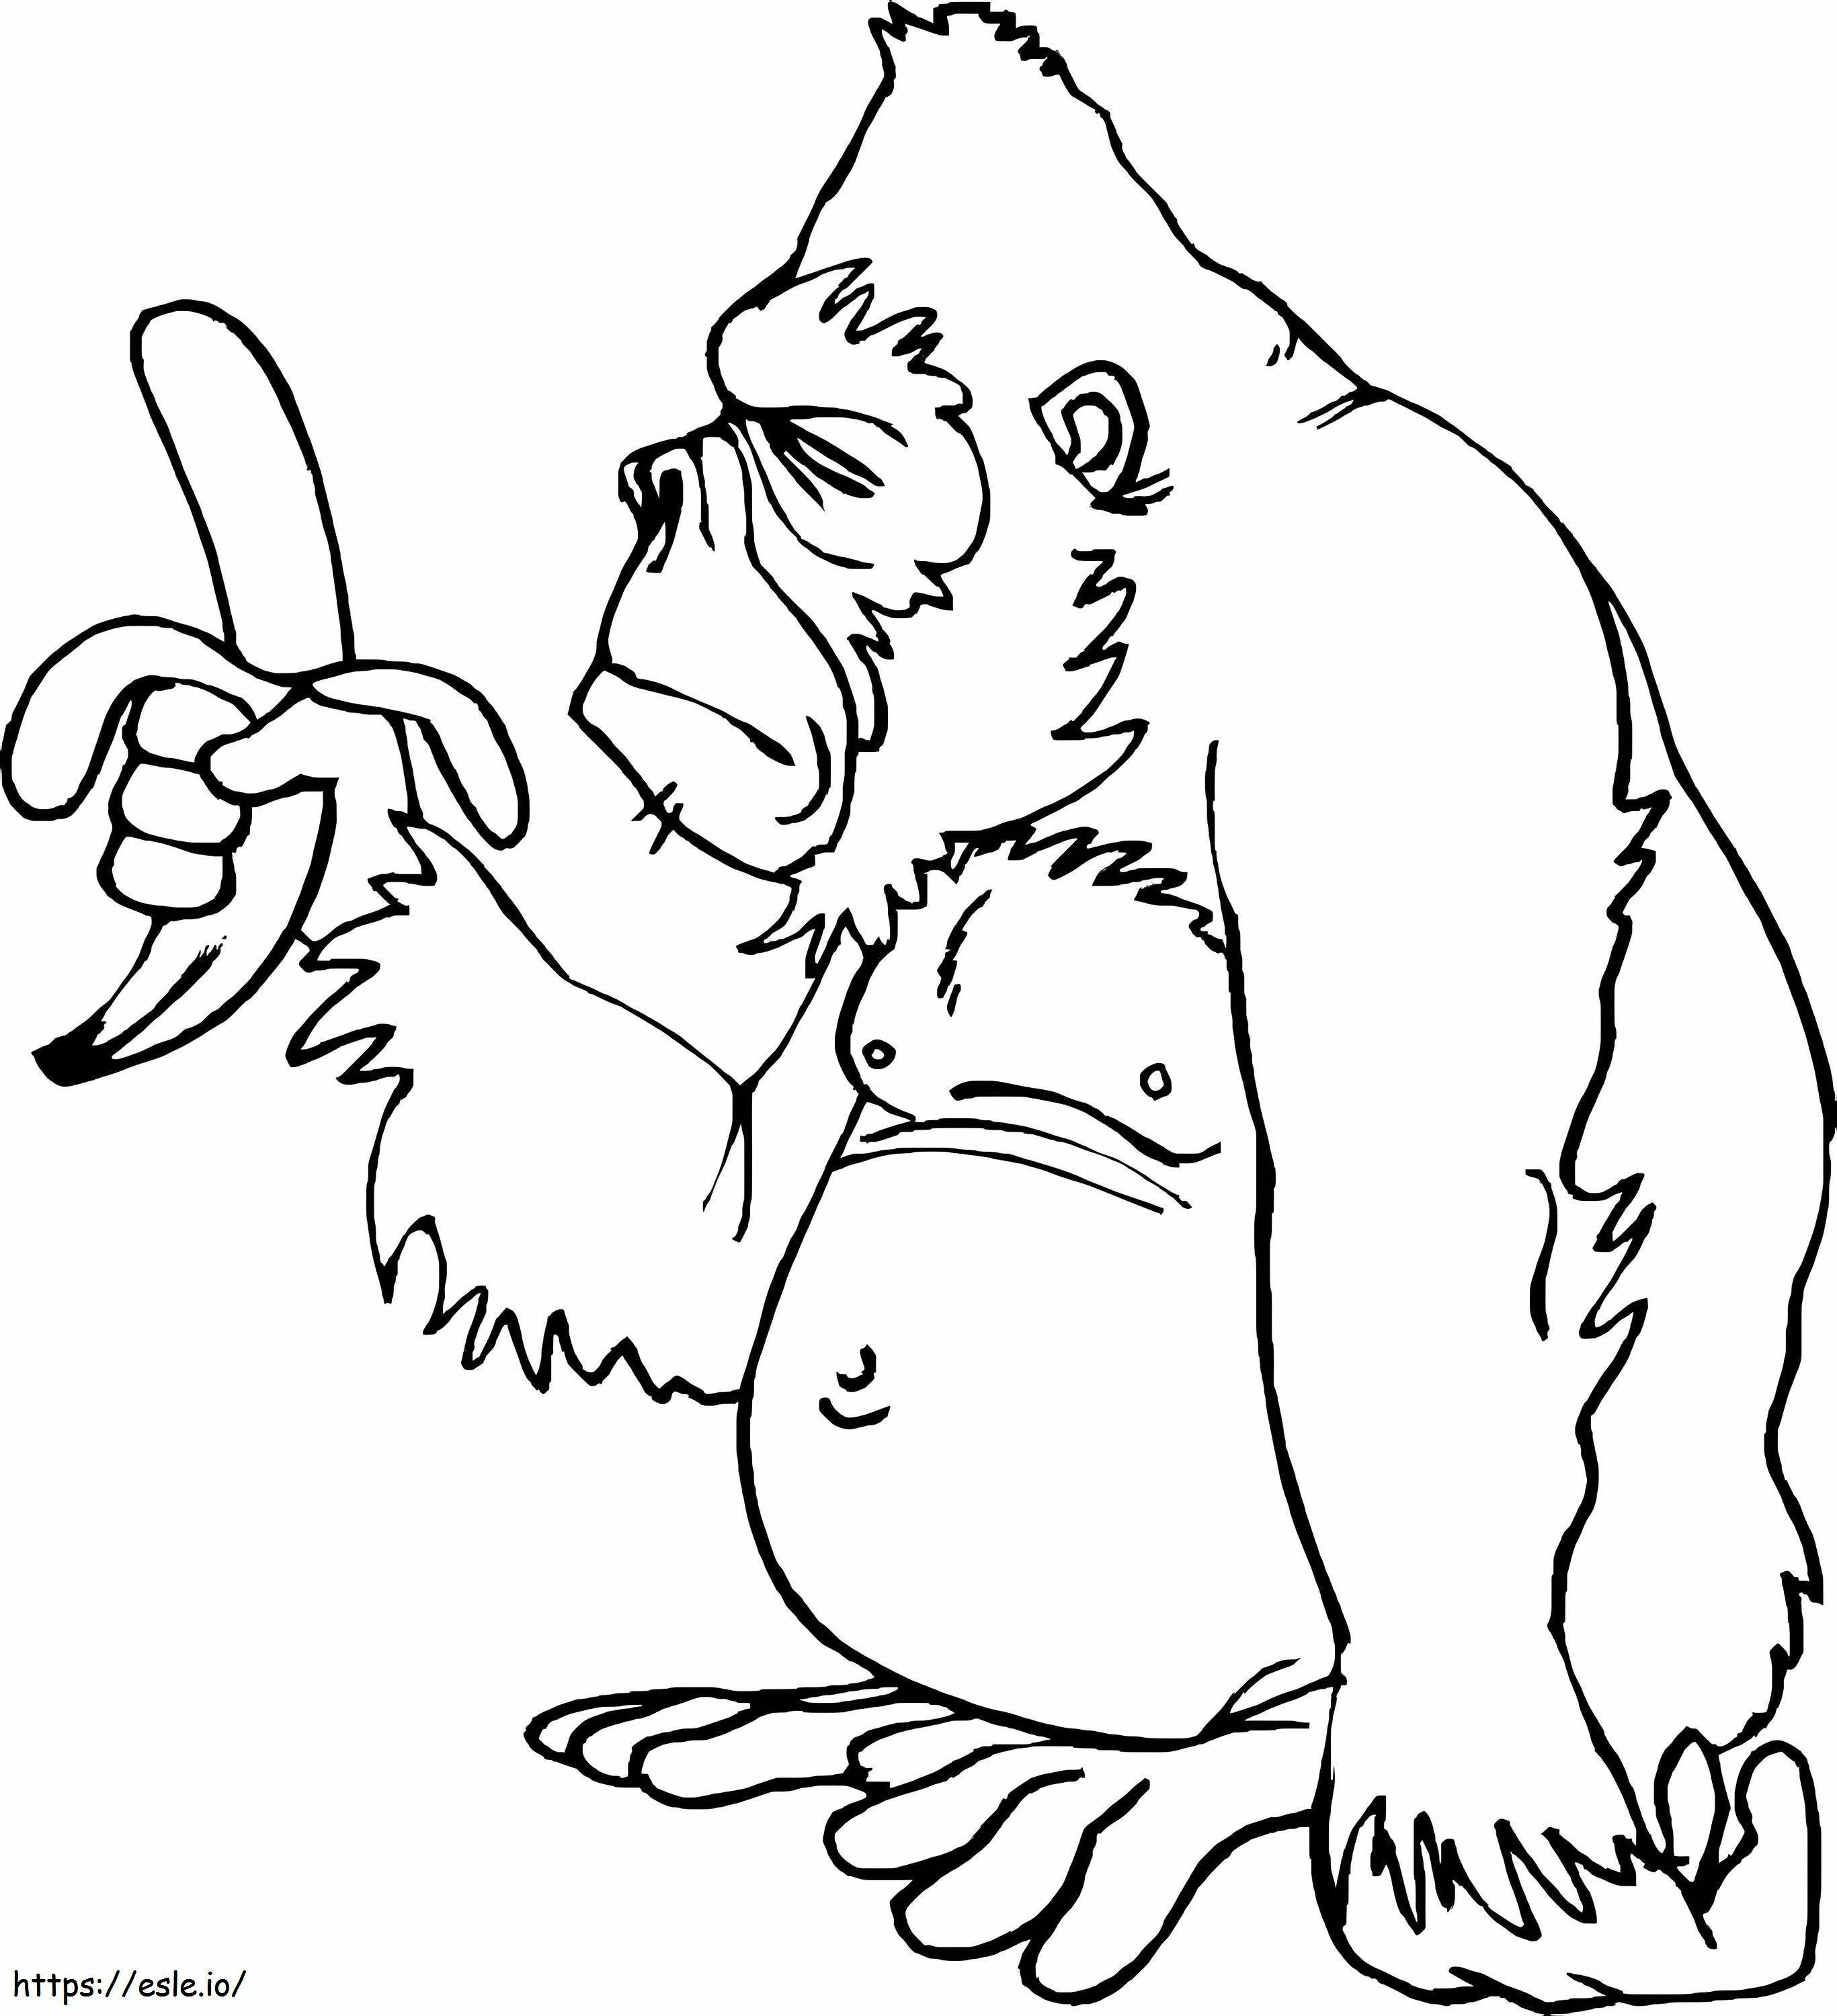 Macaco gordo segurando uma banana para colorir